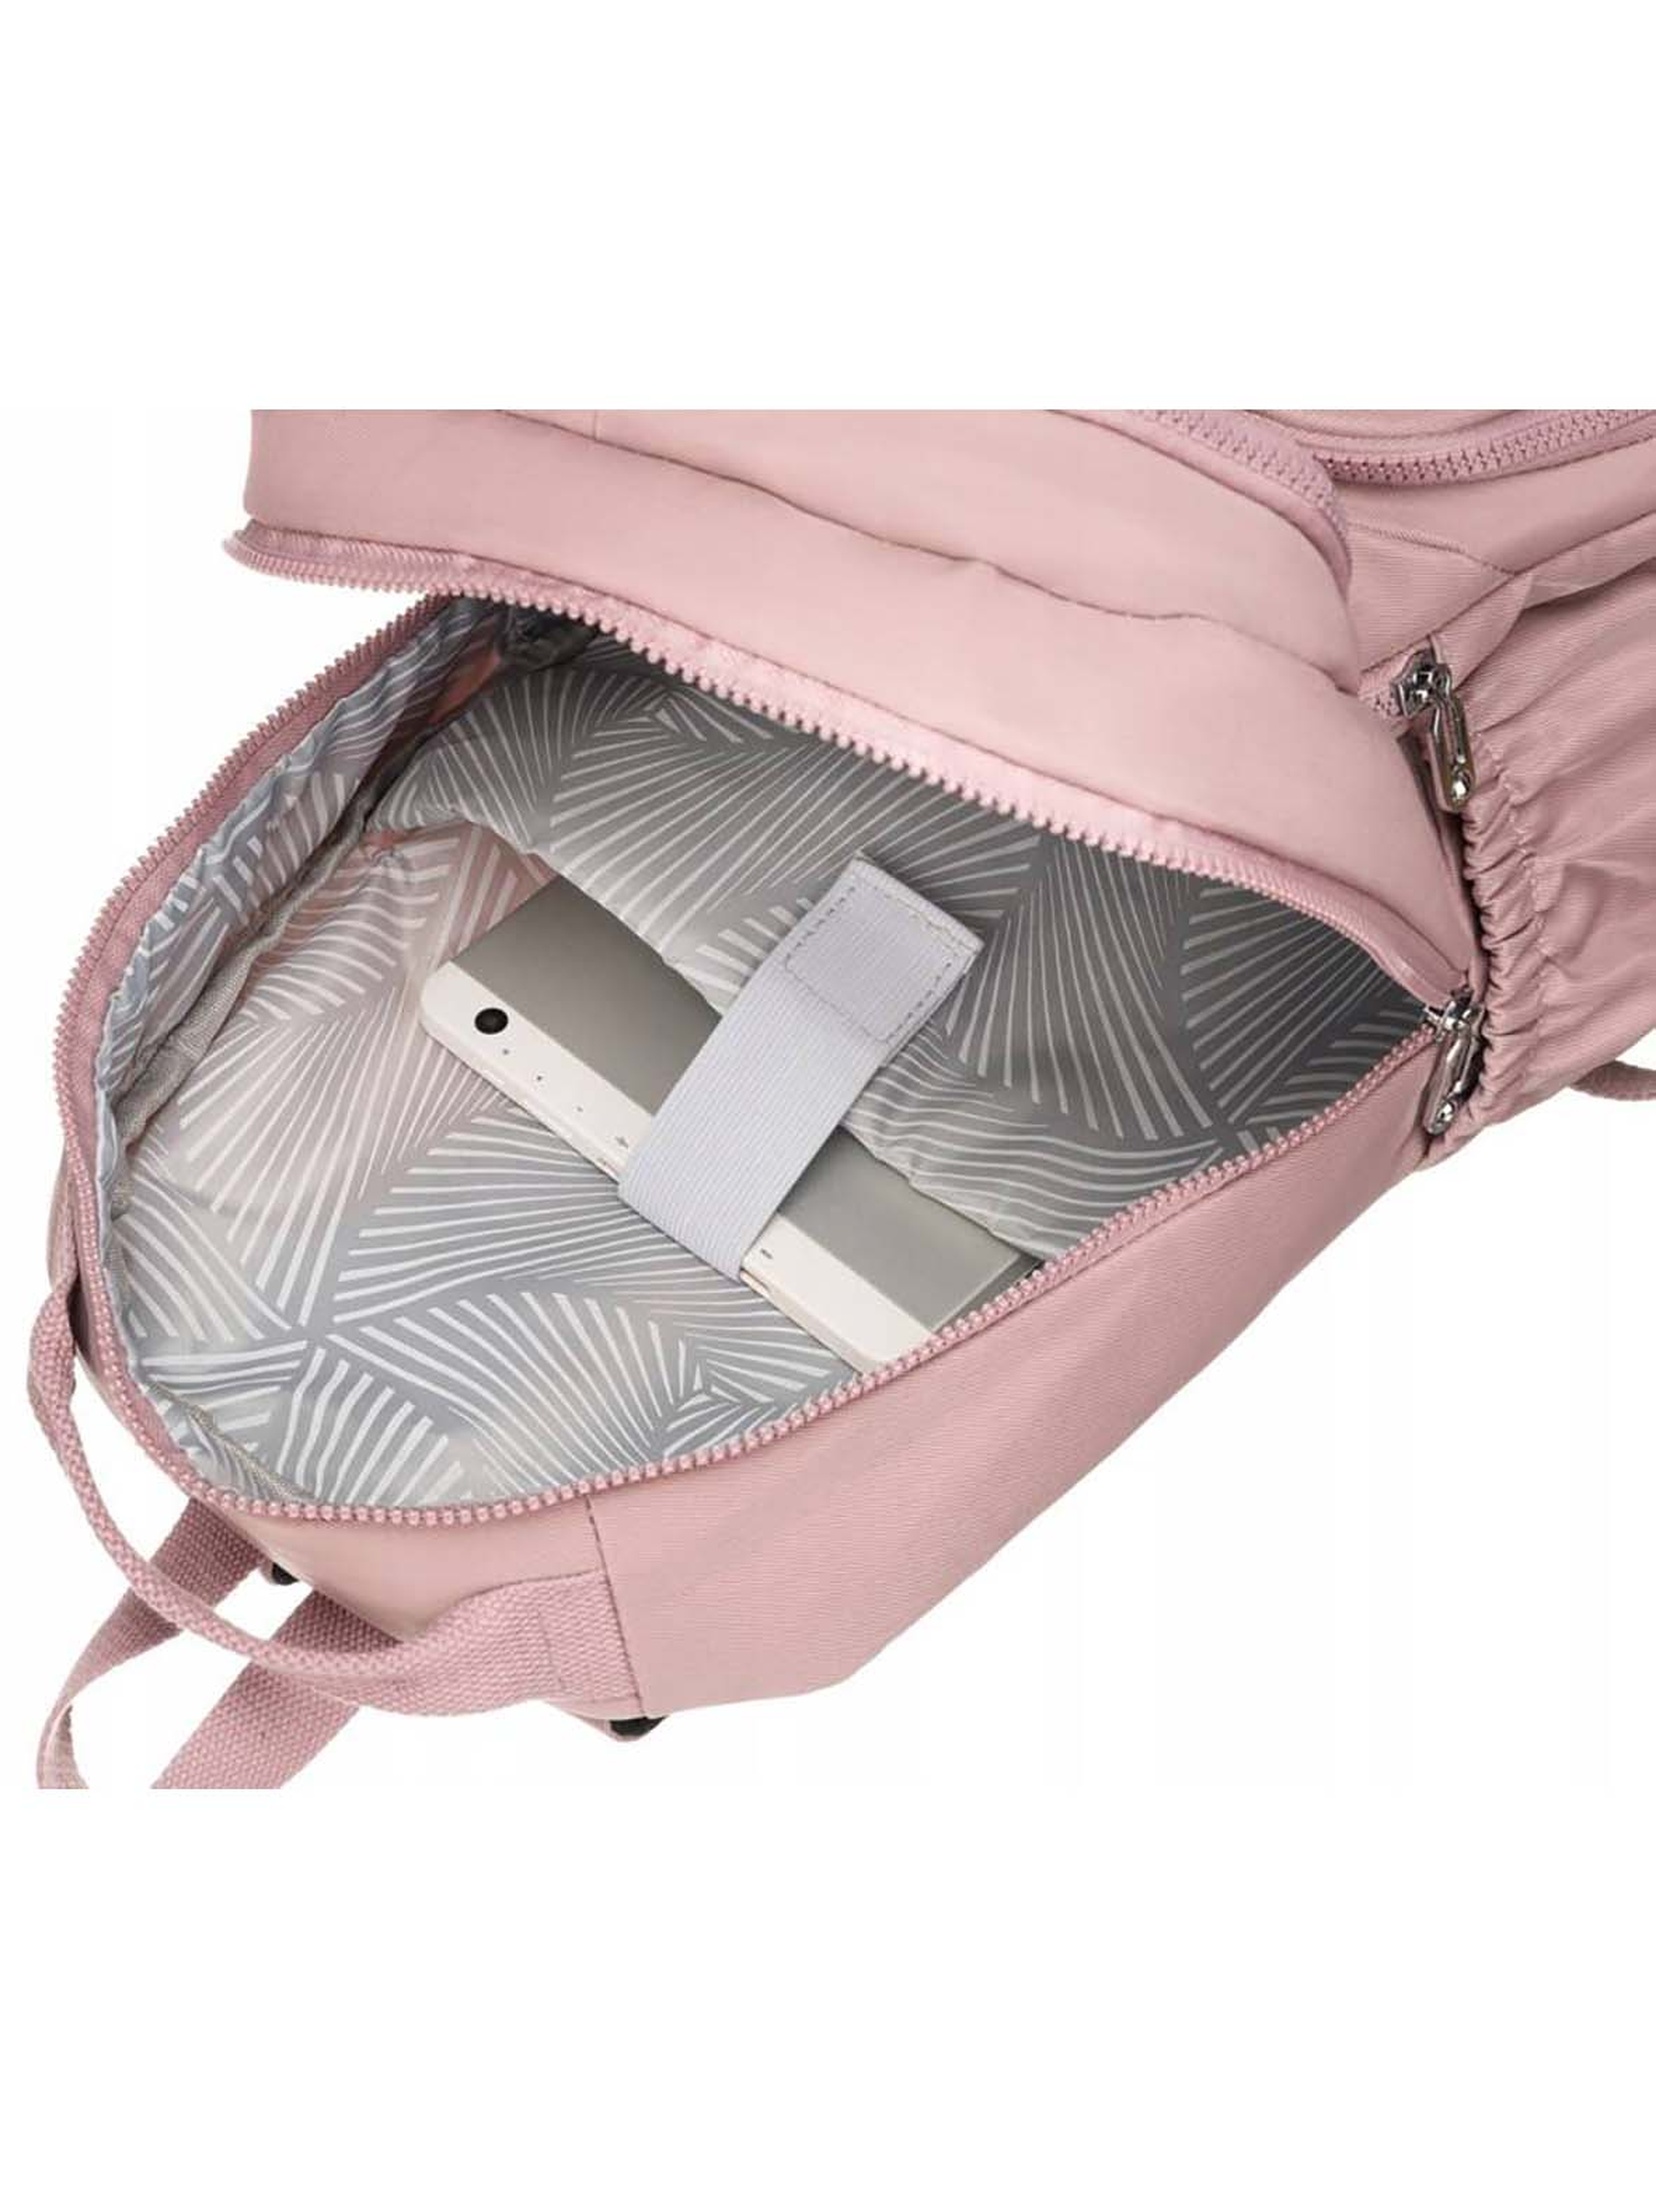 Pojemny plecak damski fioletowy z nylonu - Peterson